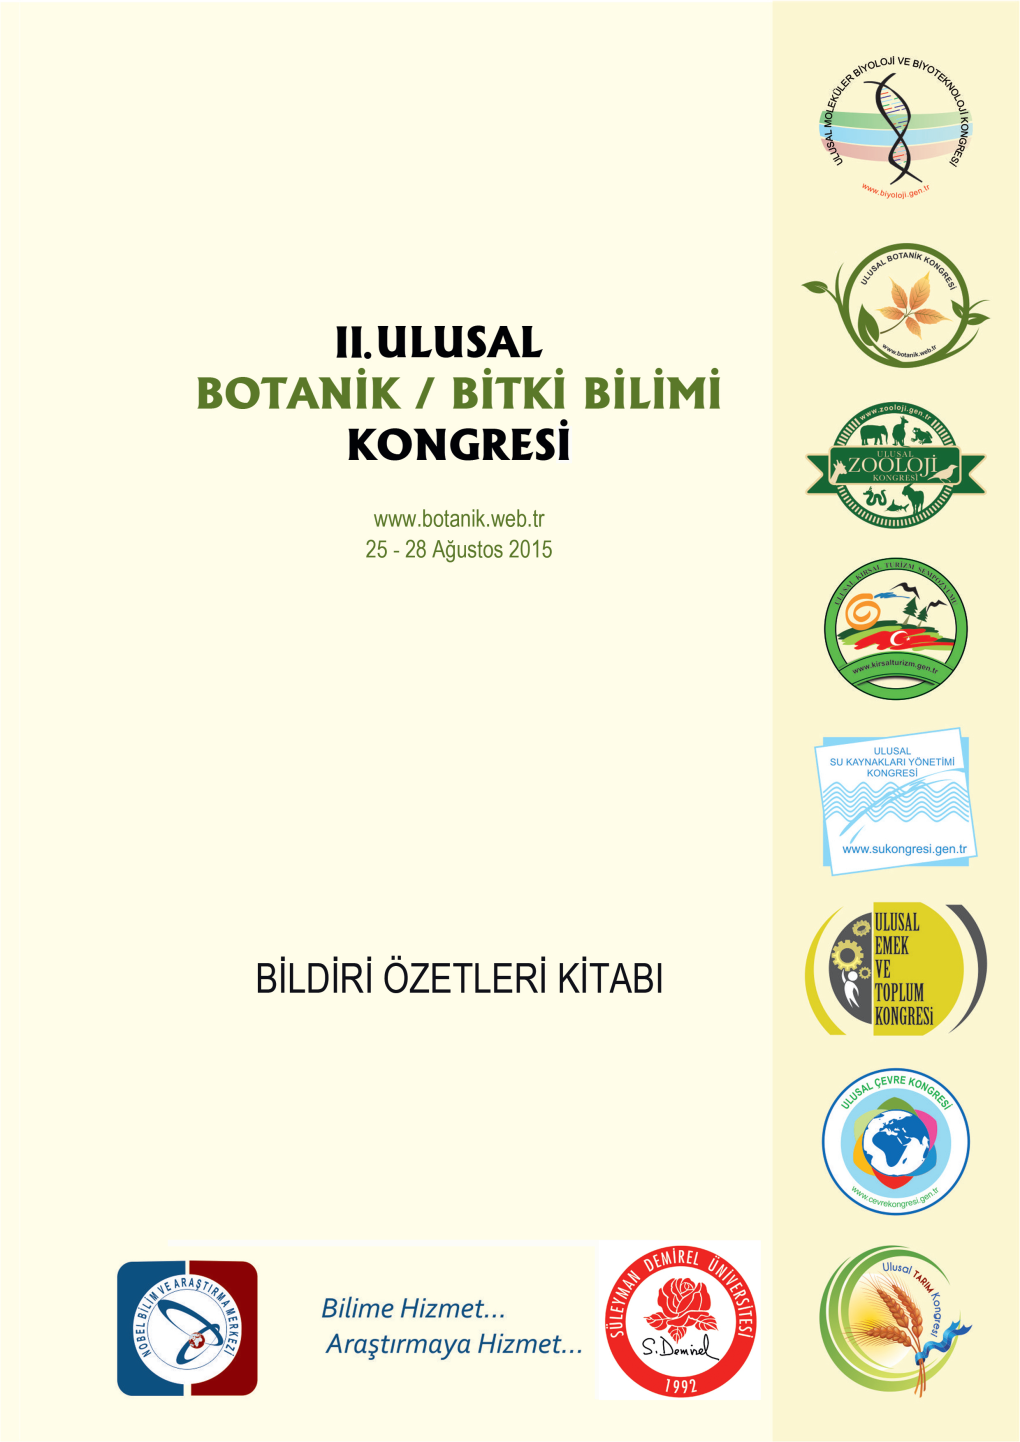 II. Ulusal Botanik/Bitki Bilimi Kongresi (25-28 Ağustos 2015, Afyonkarahisar)